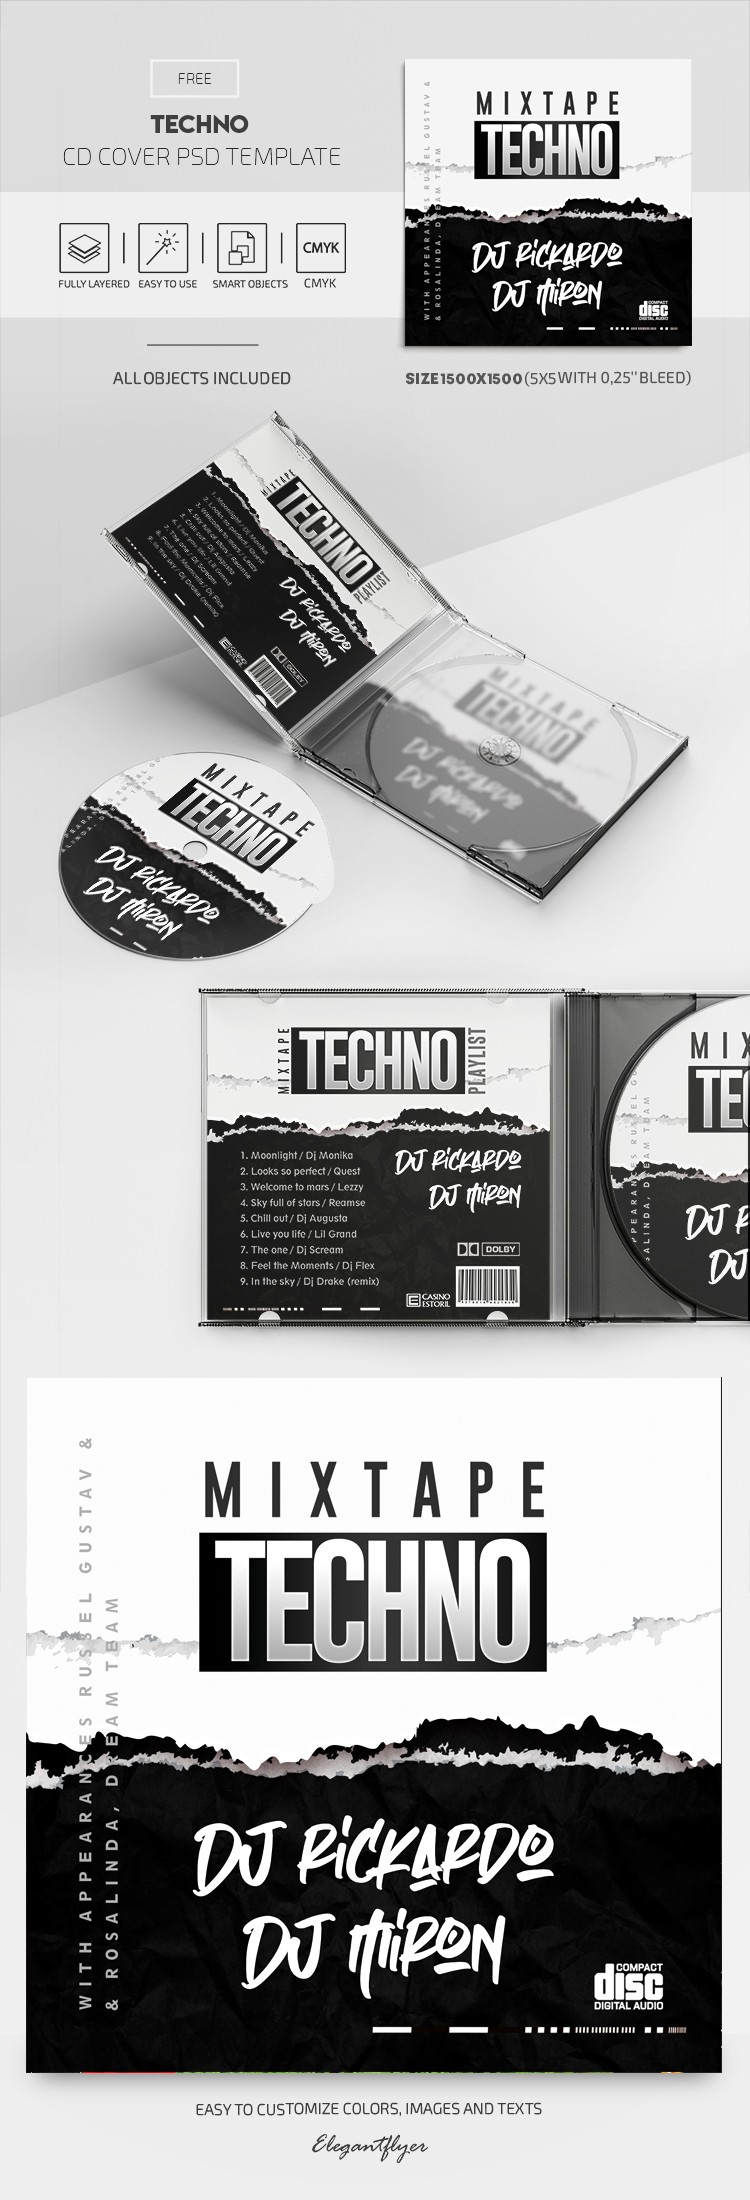 Copertina del CD Techno by ElegantFlyer